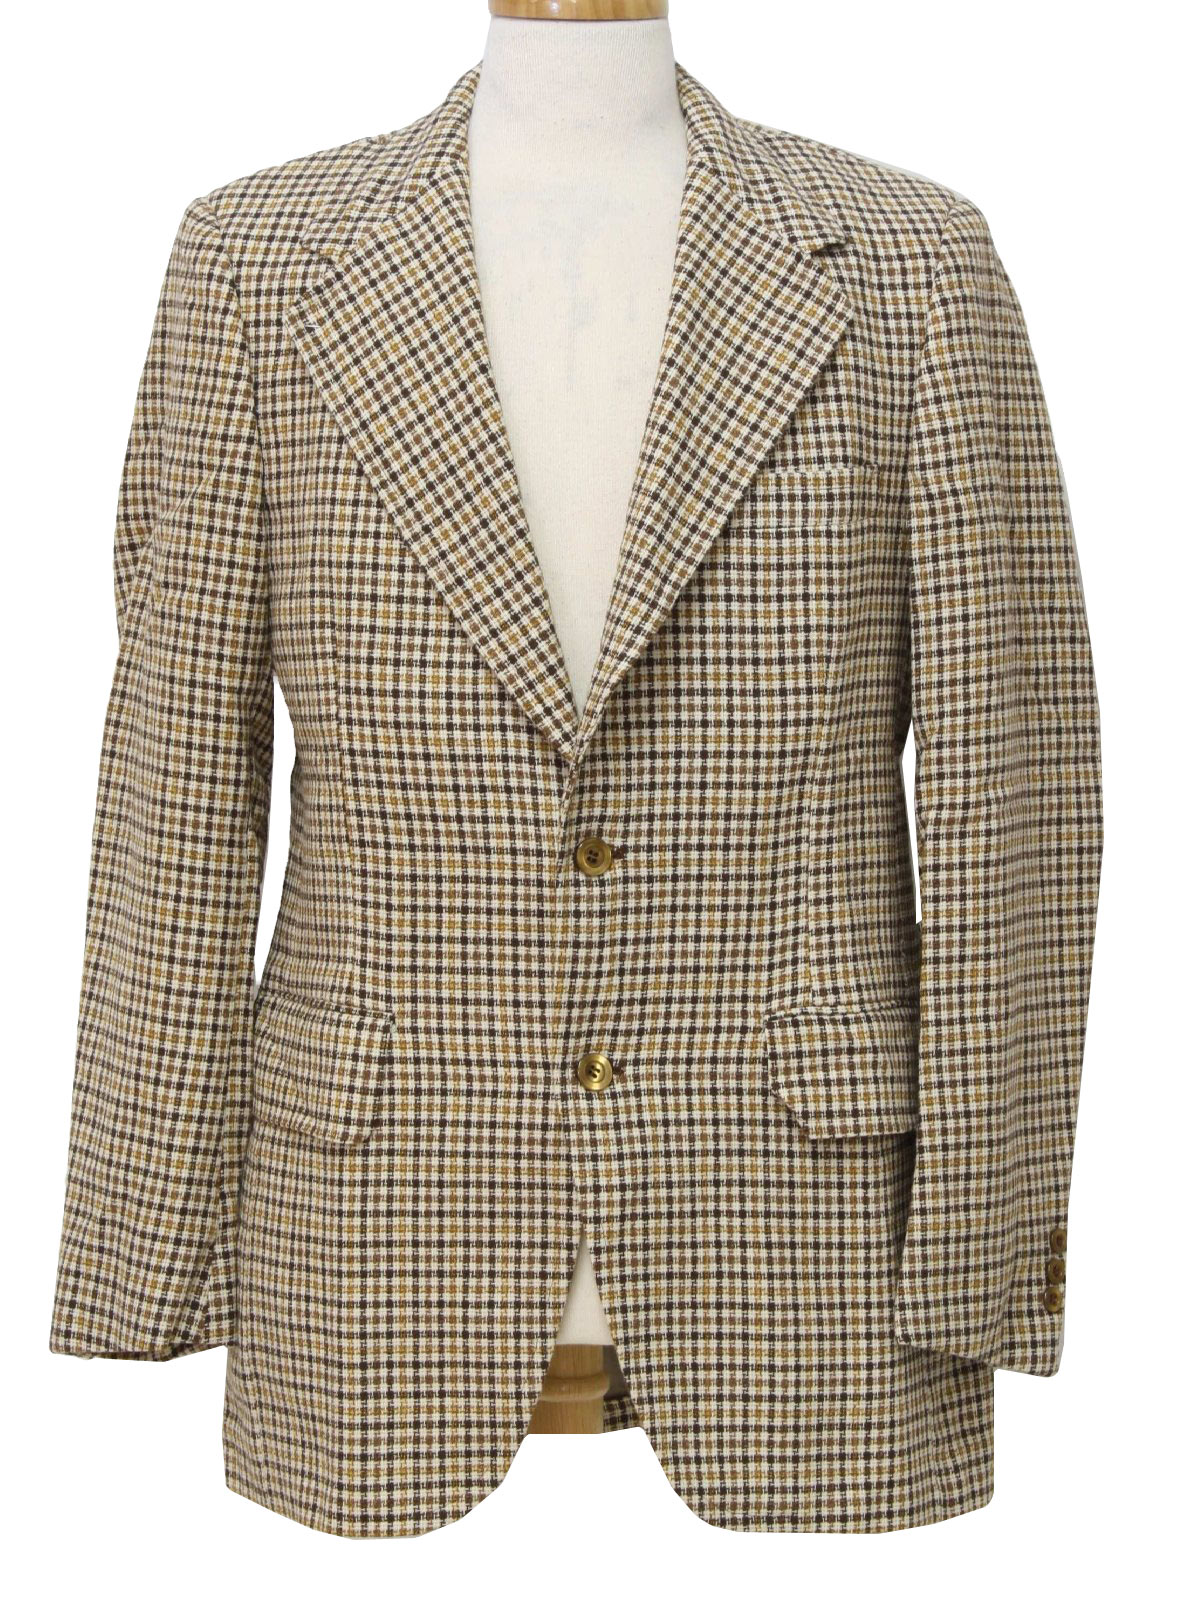 Copley Seventies Vintage Jacket: 70s -Copley- Mens cream, brown, tan ...